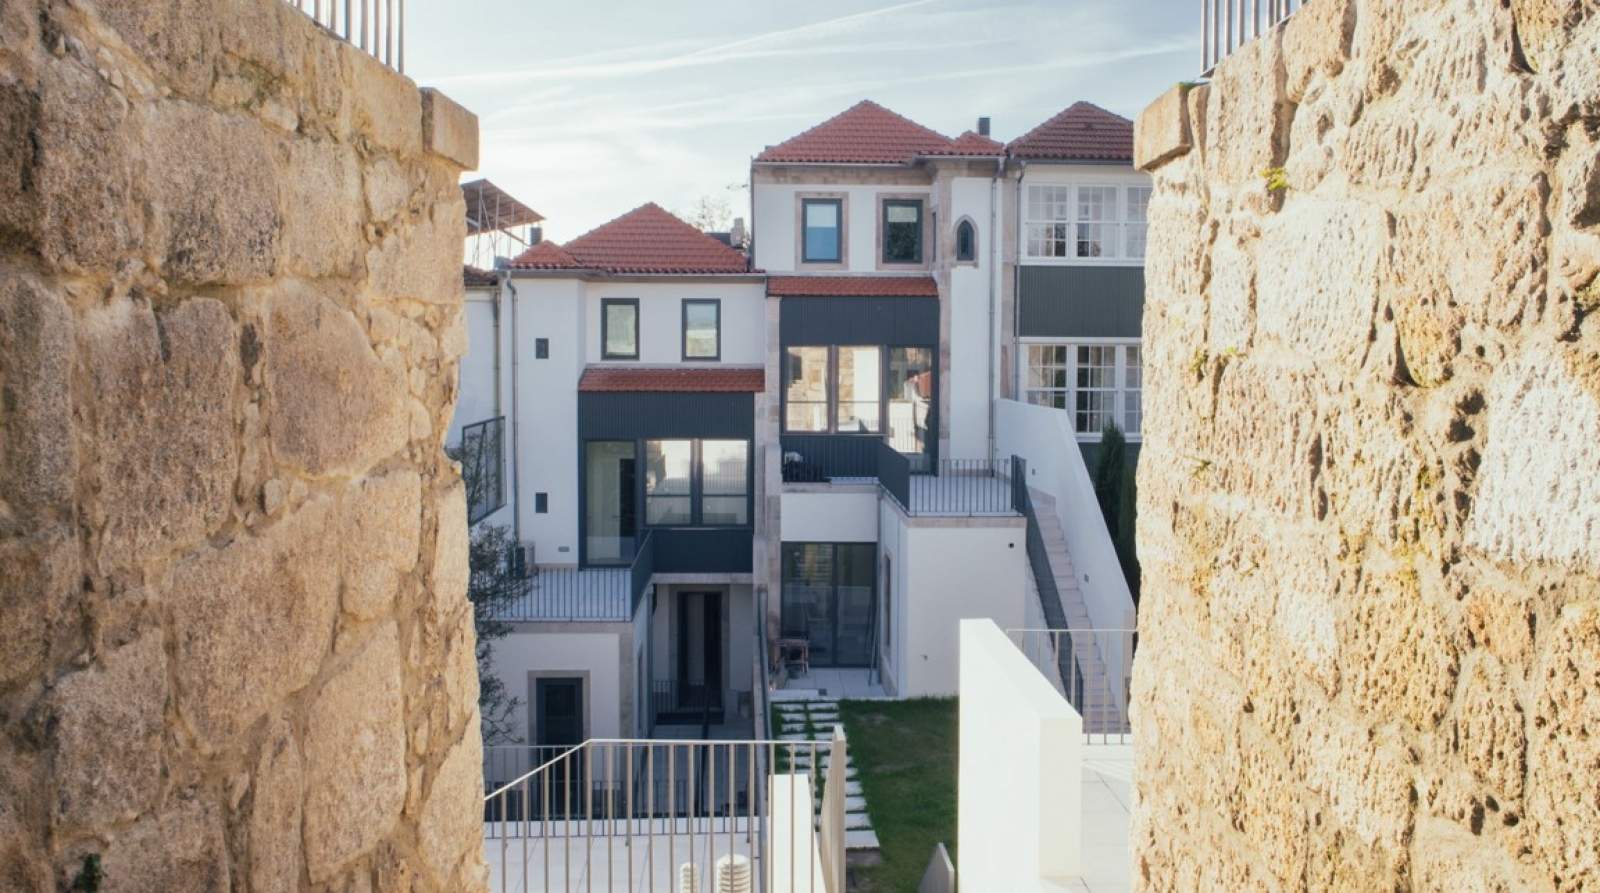 Neue Wohnung mit Mezzanin und Balkon, zu verkaufen, in der Innenstadt von Porto, Portugal_212027